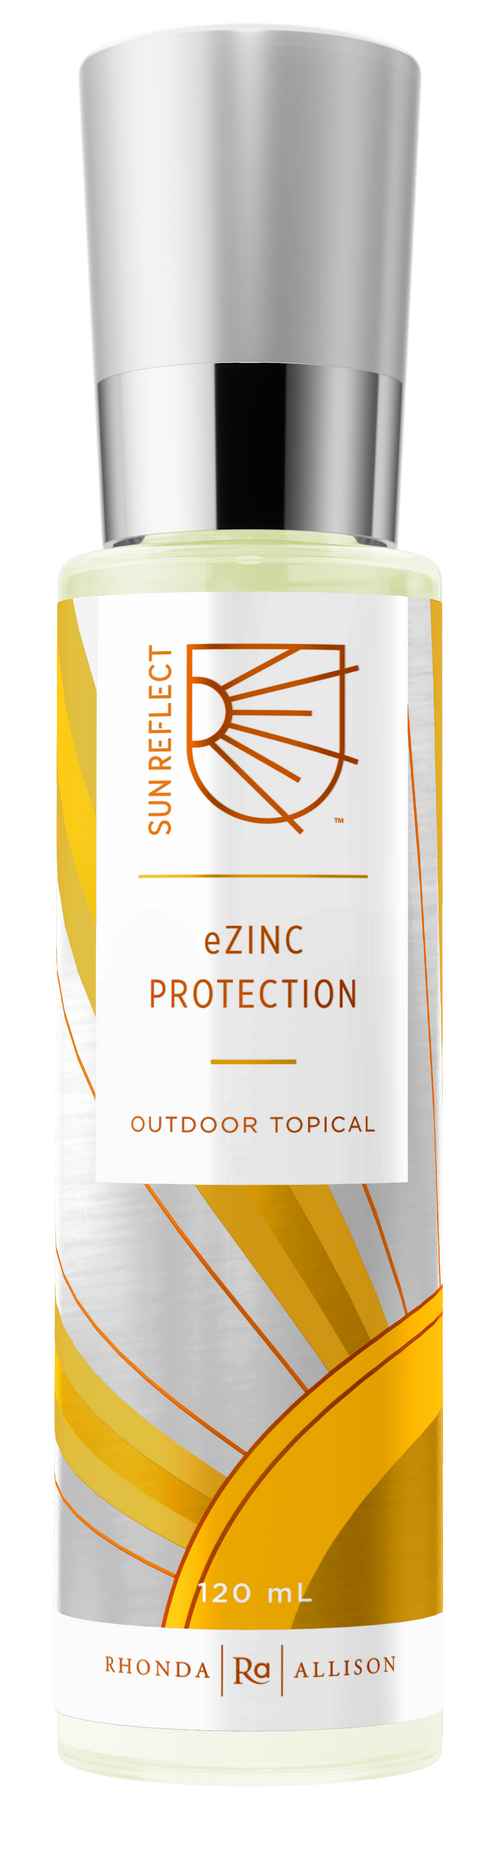 eZinc Protection